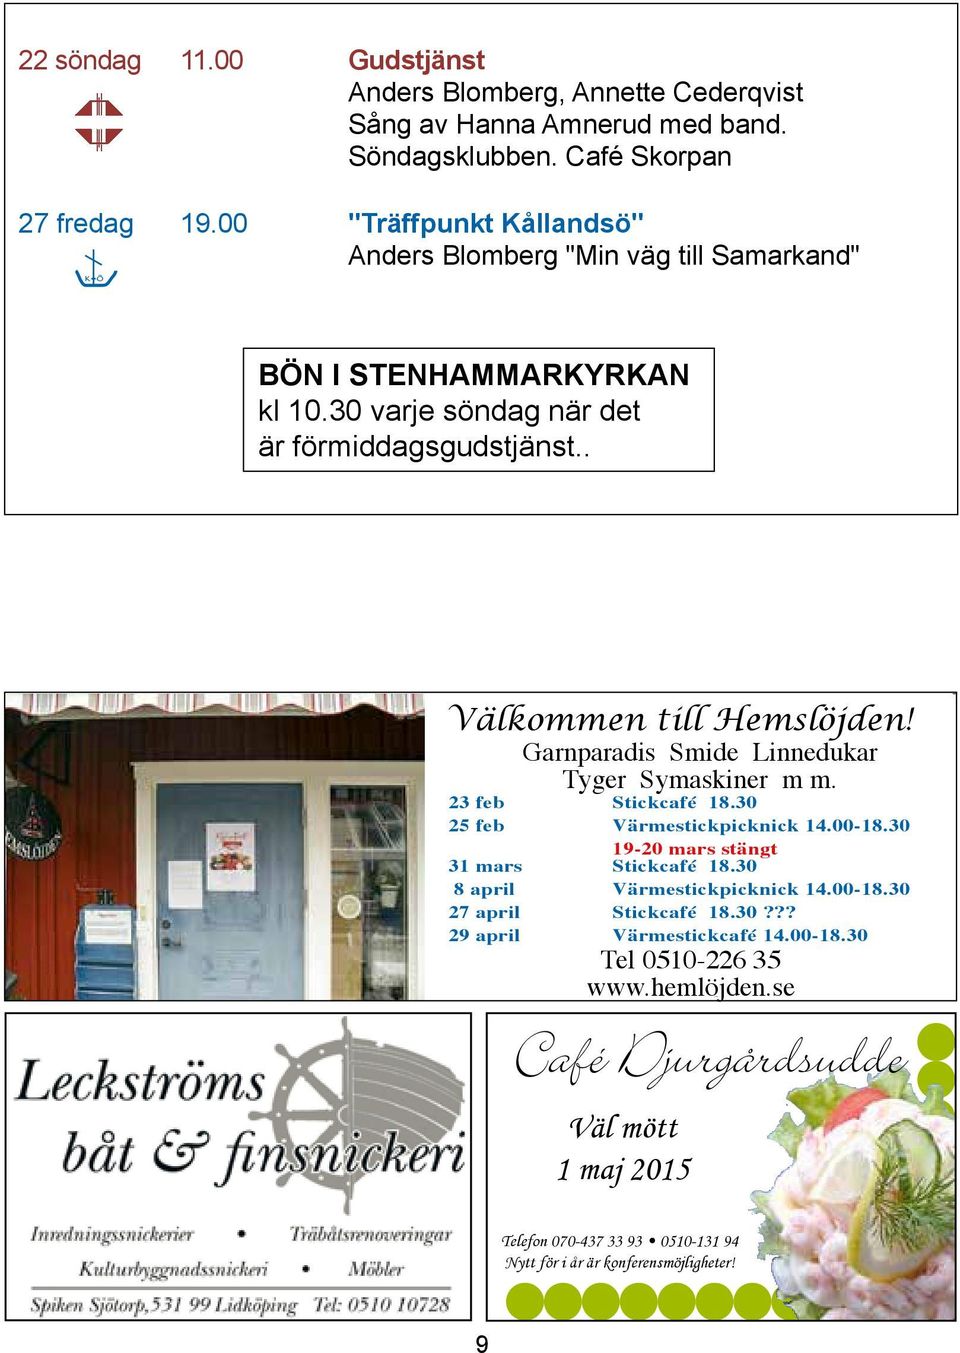 Garnparadis Smide Linnedukar Garnparadis Smide Linnedukar Tyger Symaskiner m m. Tyger Symaskiner m m 23 feb Stickcafé 18.30 25 feb Värmestickpicknick 14.00-18.